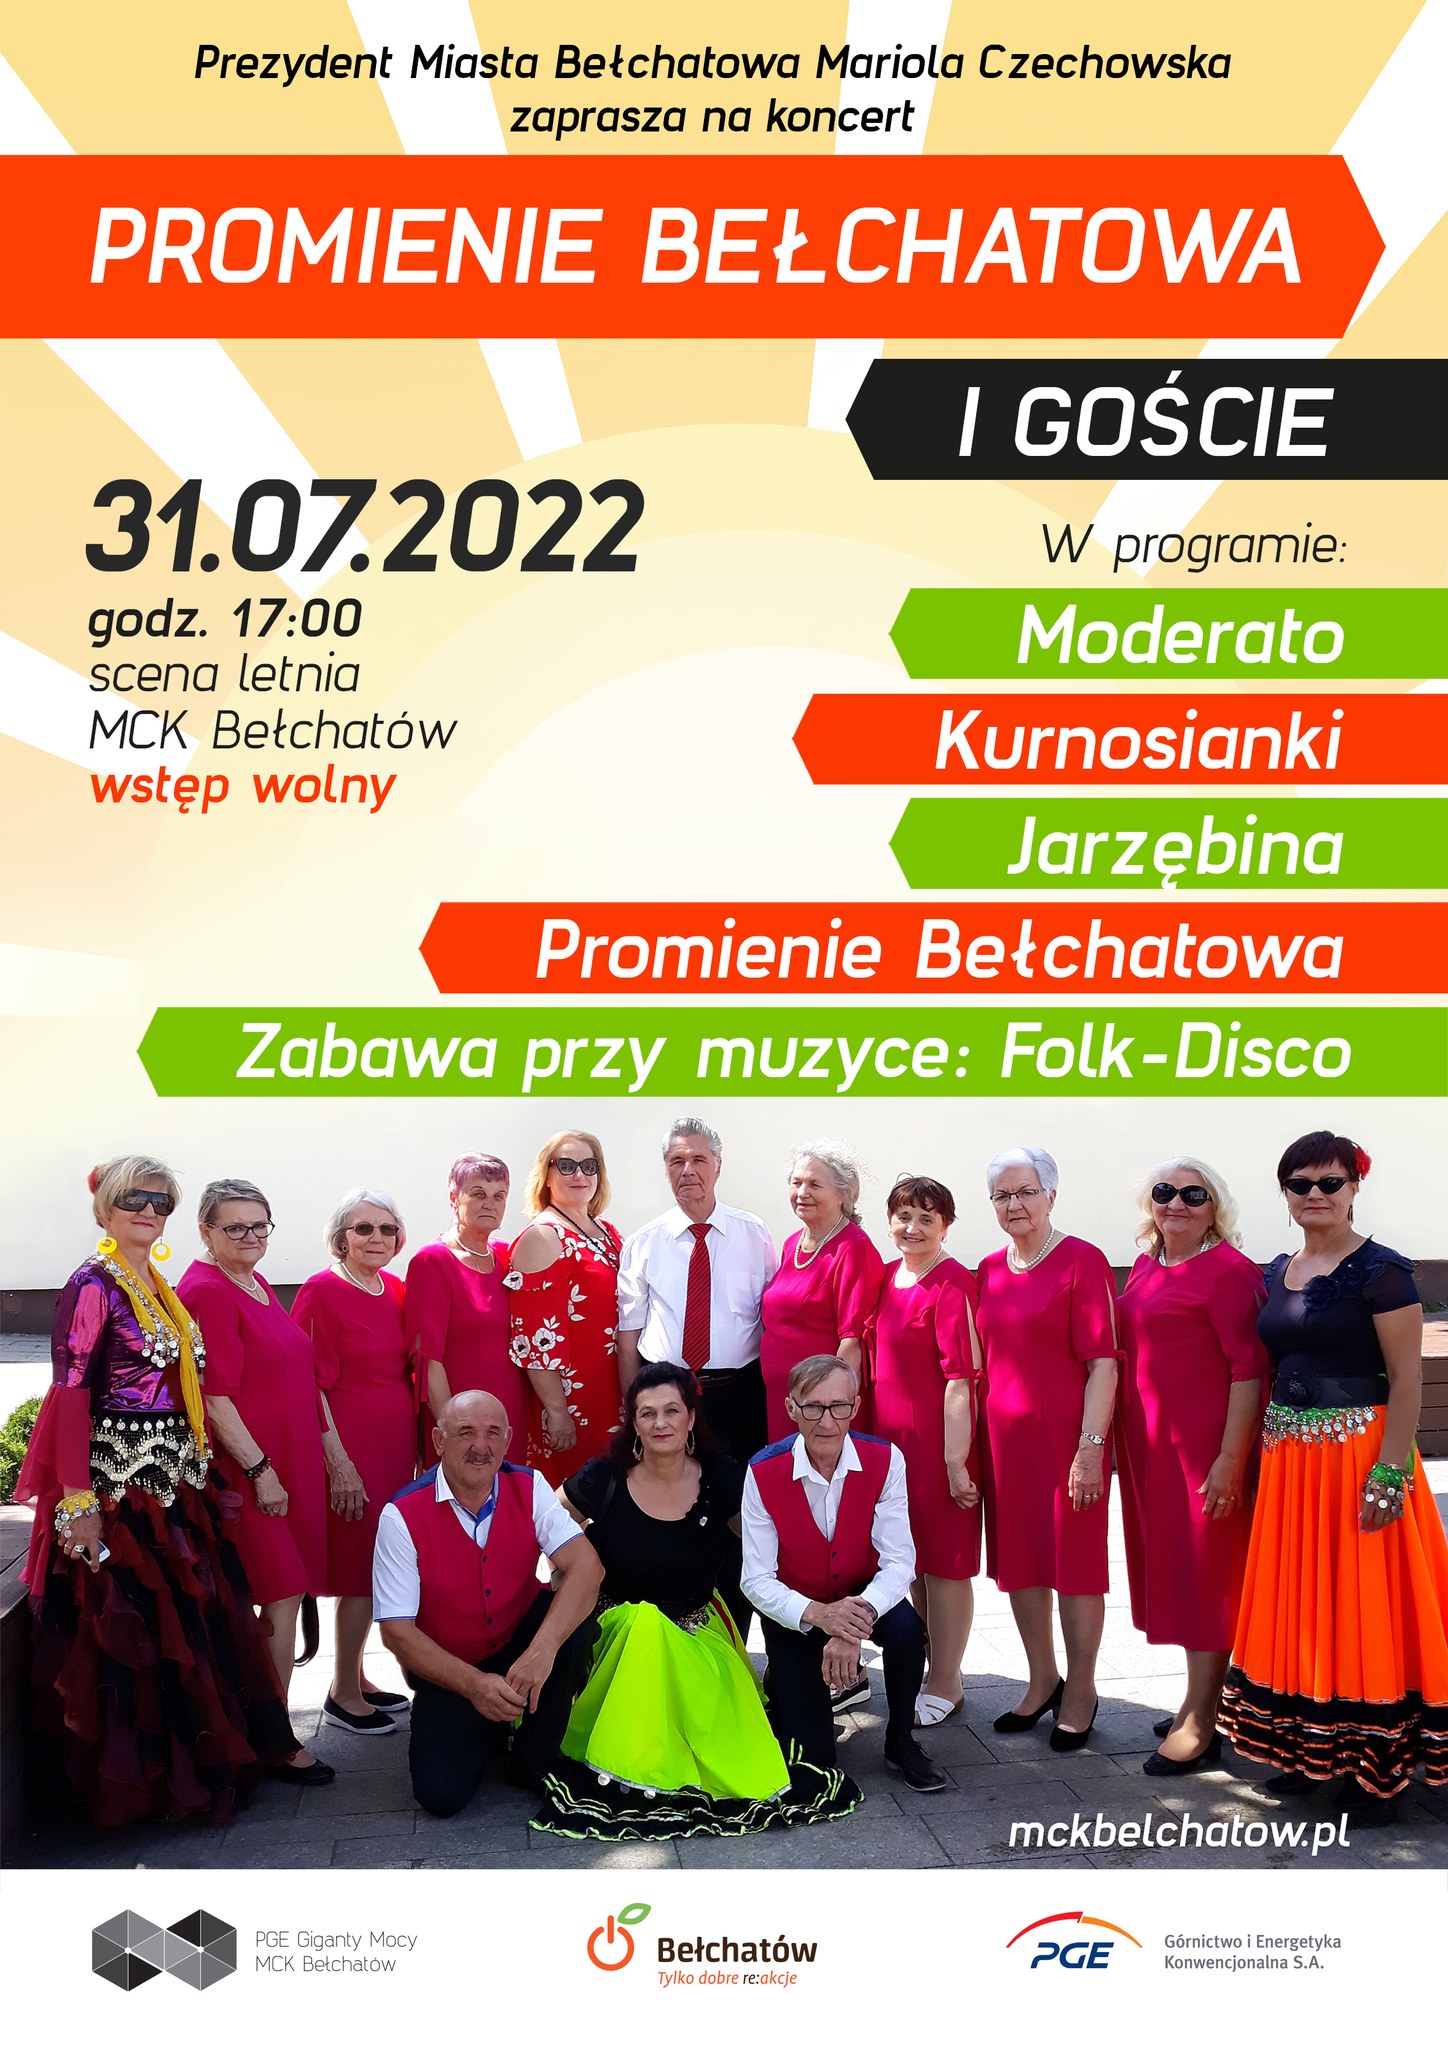 Plakat promujący koncert Promienie Bełchatowa i goście 